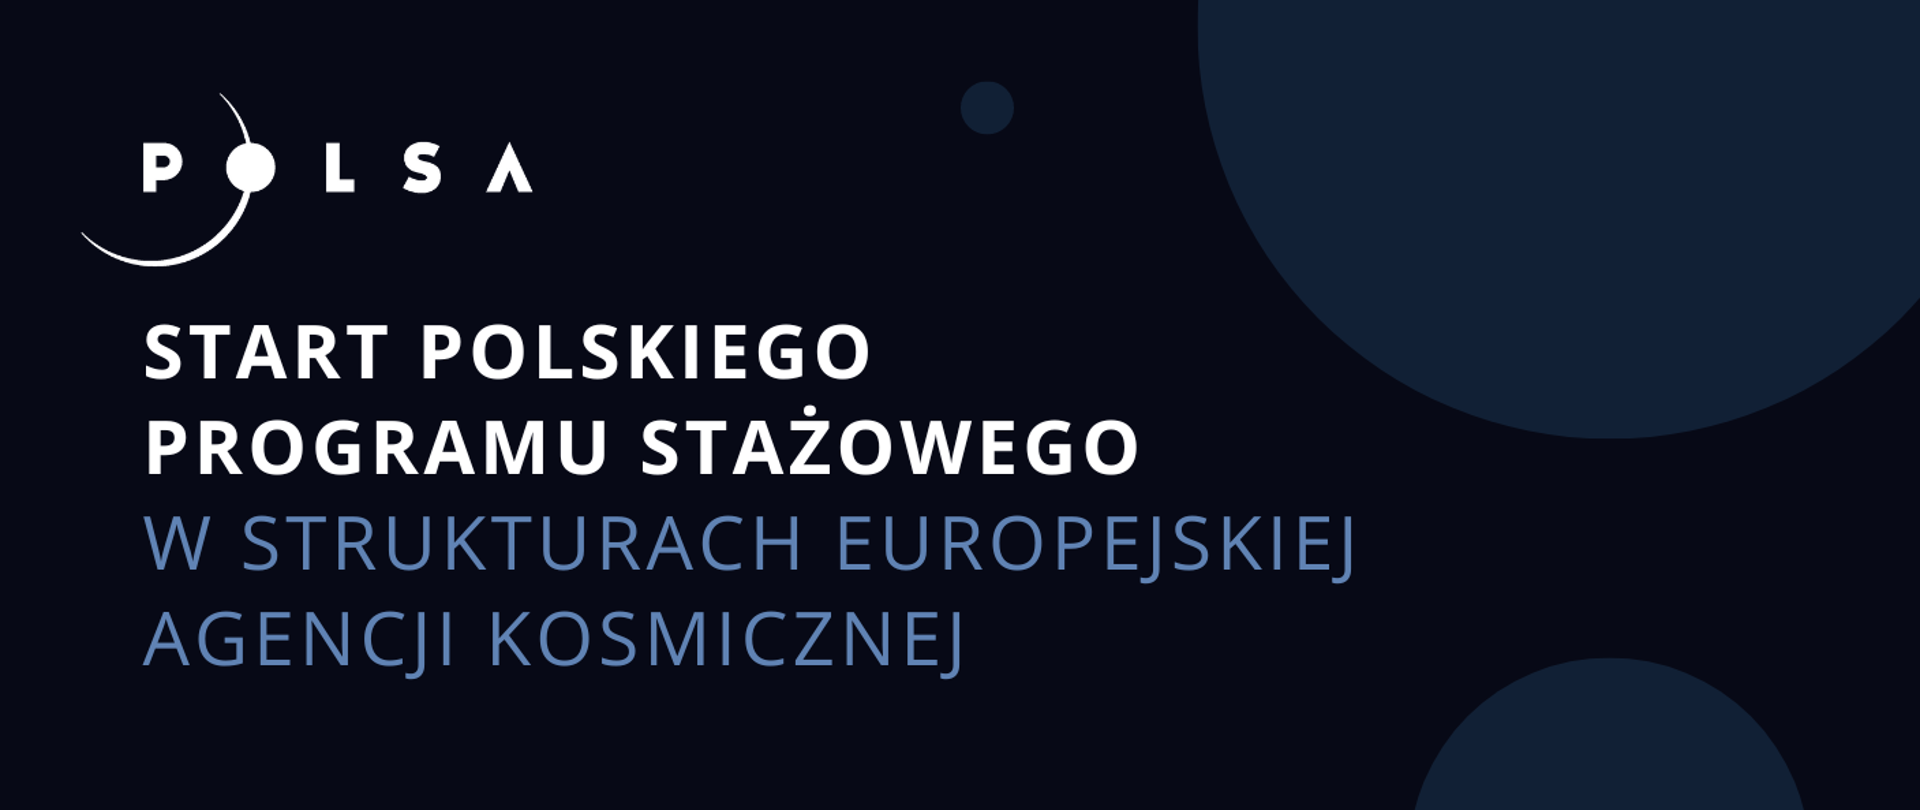 Grafika - na niebieskim tle napis Start polskiego programu stażowego w strukturach Europejskiej Agencji Kosmicznej.